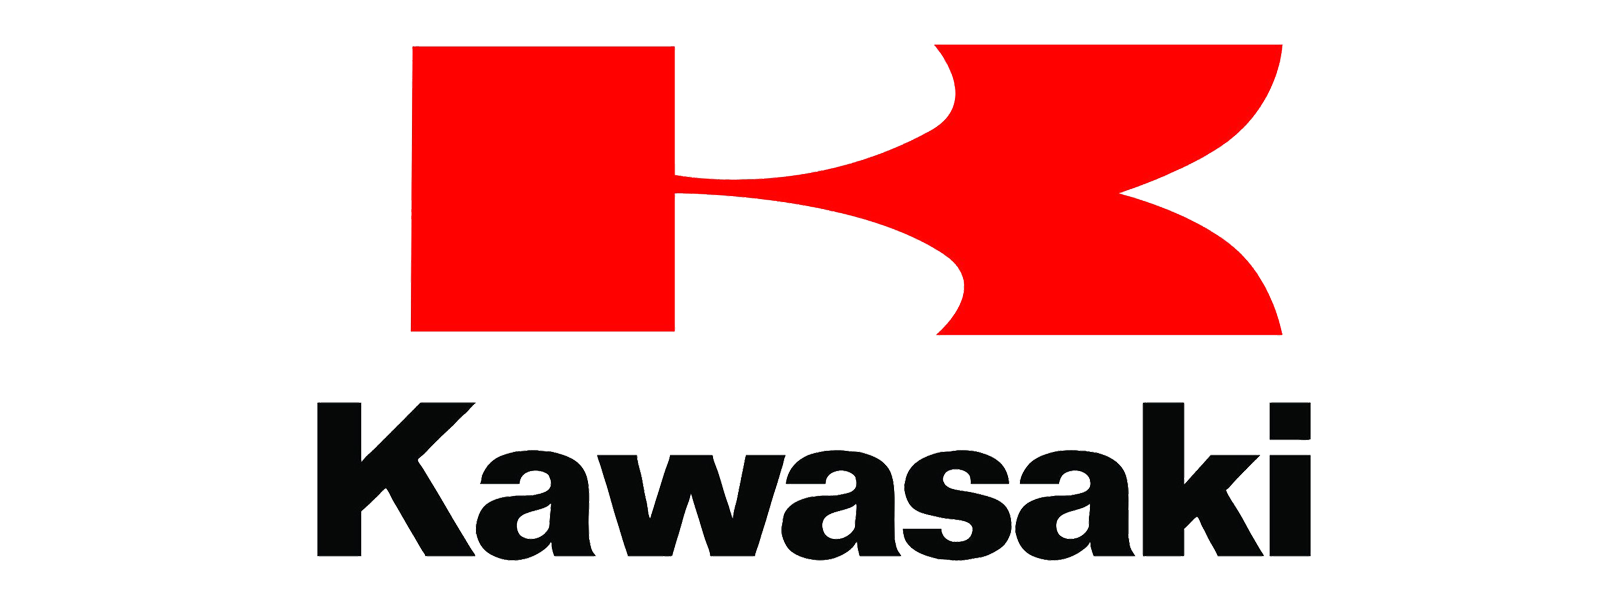 Kawasaki Logo】| Kawasaki Lo